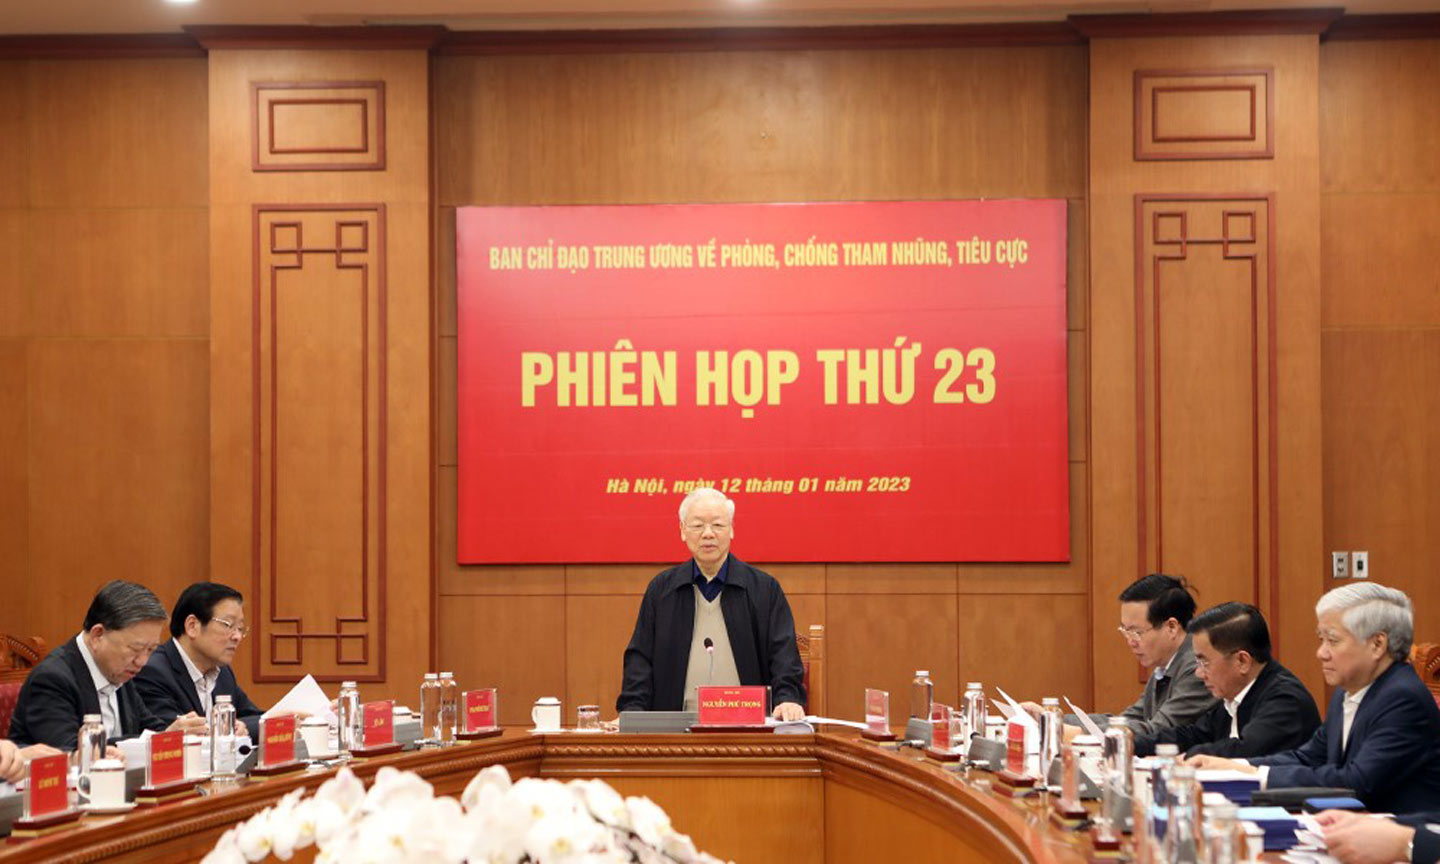 Tổng Bí thư Nguyễn Phú Trọng chủ trì Phiên họp thứ 23 của Ban Chỉ đạo Trung ương về phòng, chống TN, TC.                                                                                                                                                      Ảnh: noichinh.vn